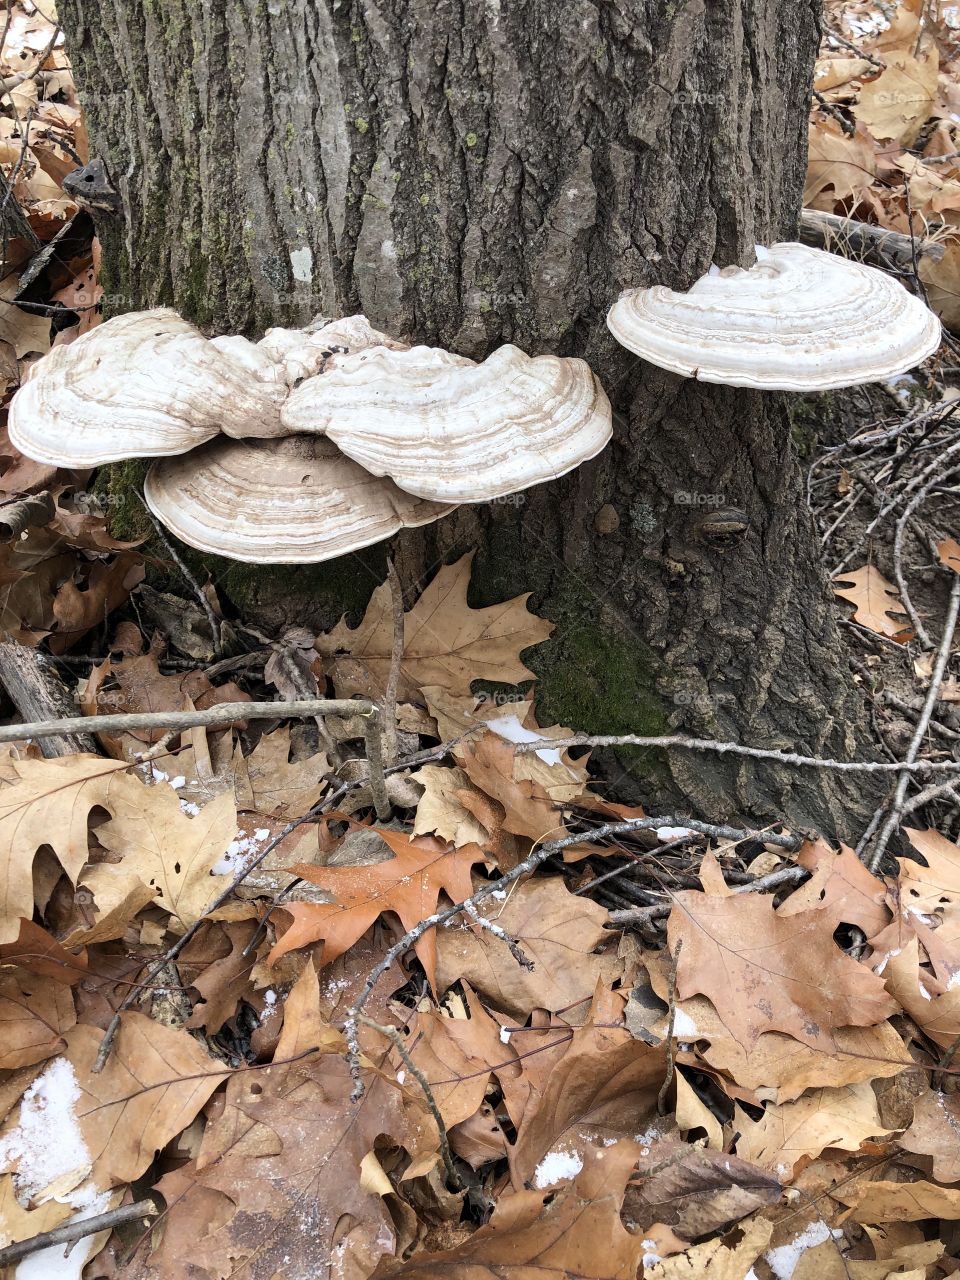 Artist mushrooms growing on a tree